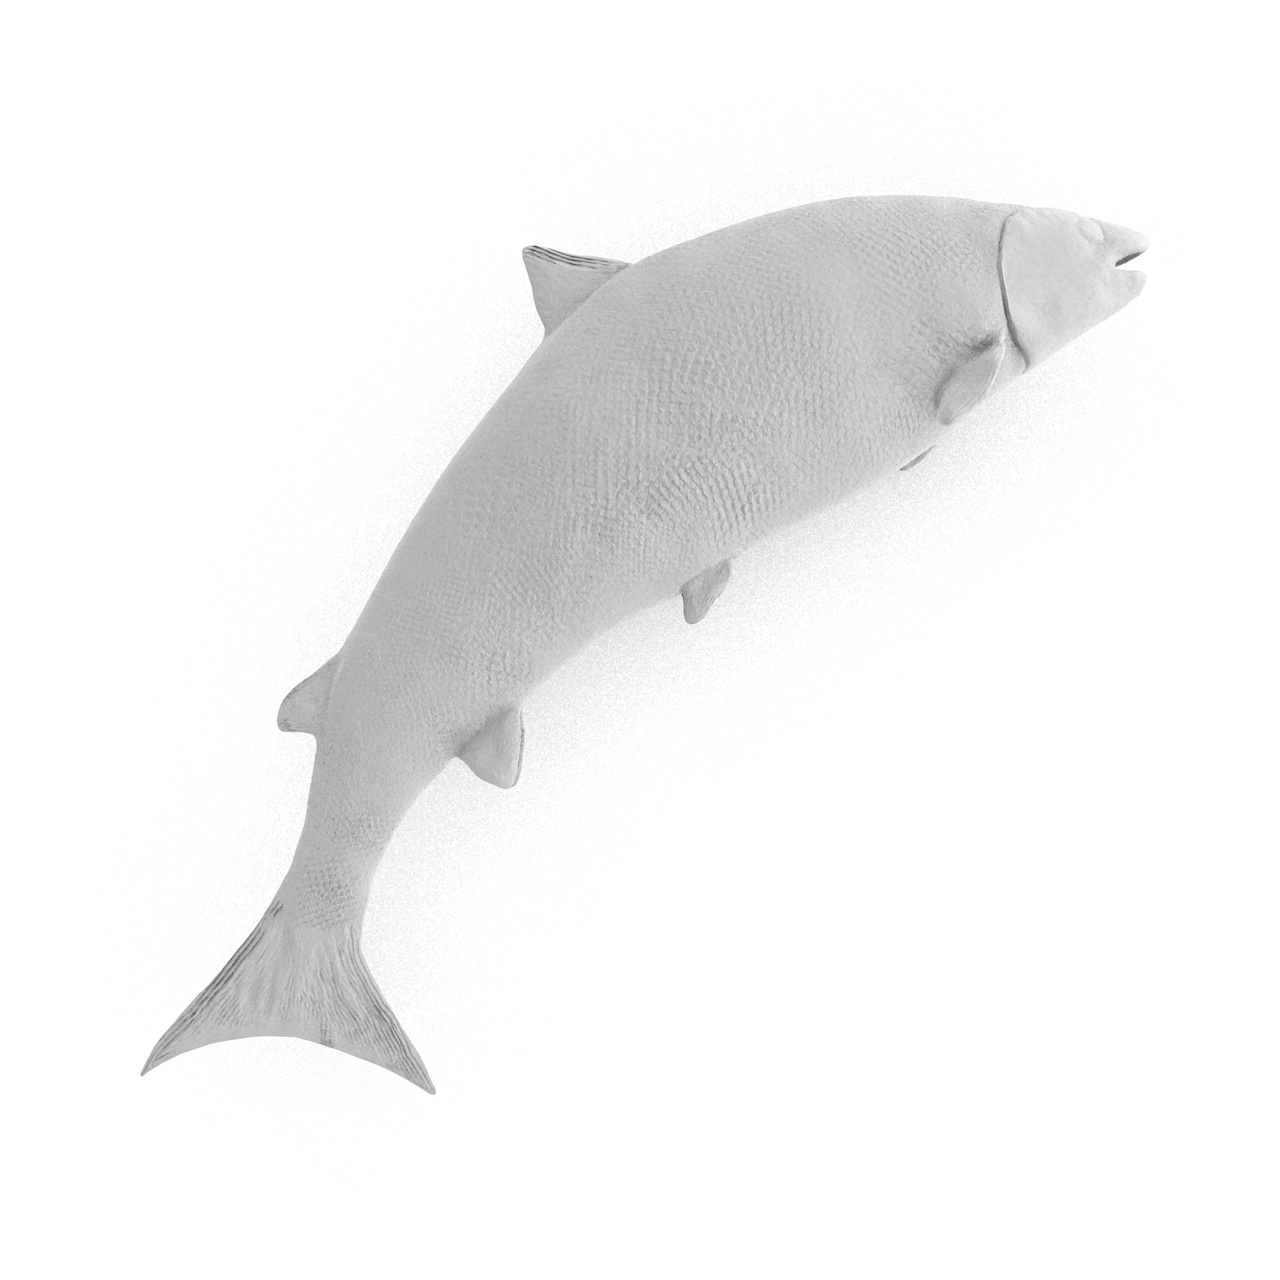 Büyük Pasifik Somonu Oncorhynchus keta 3d baskı modeli